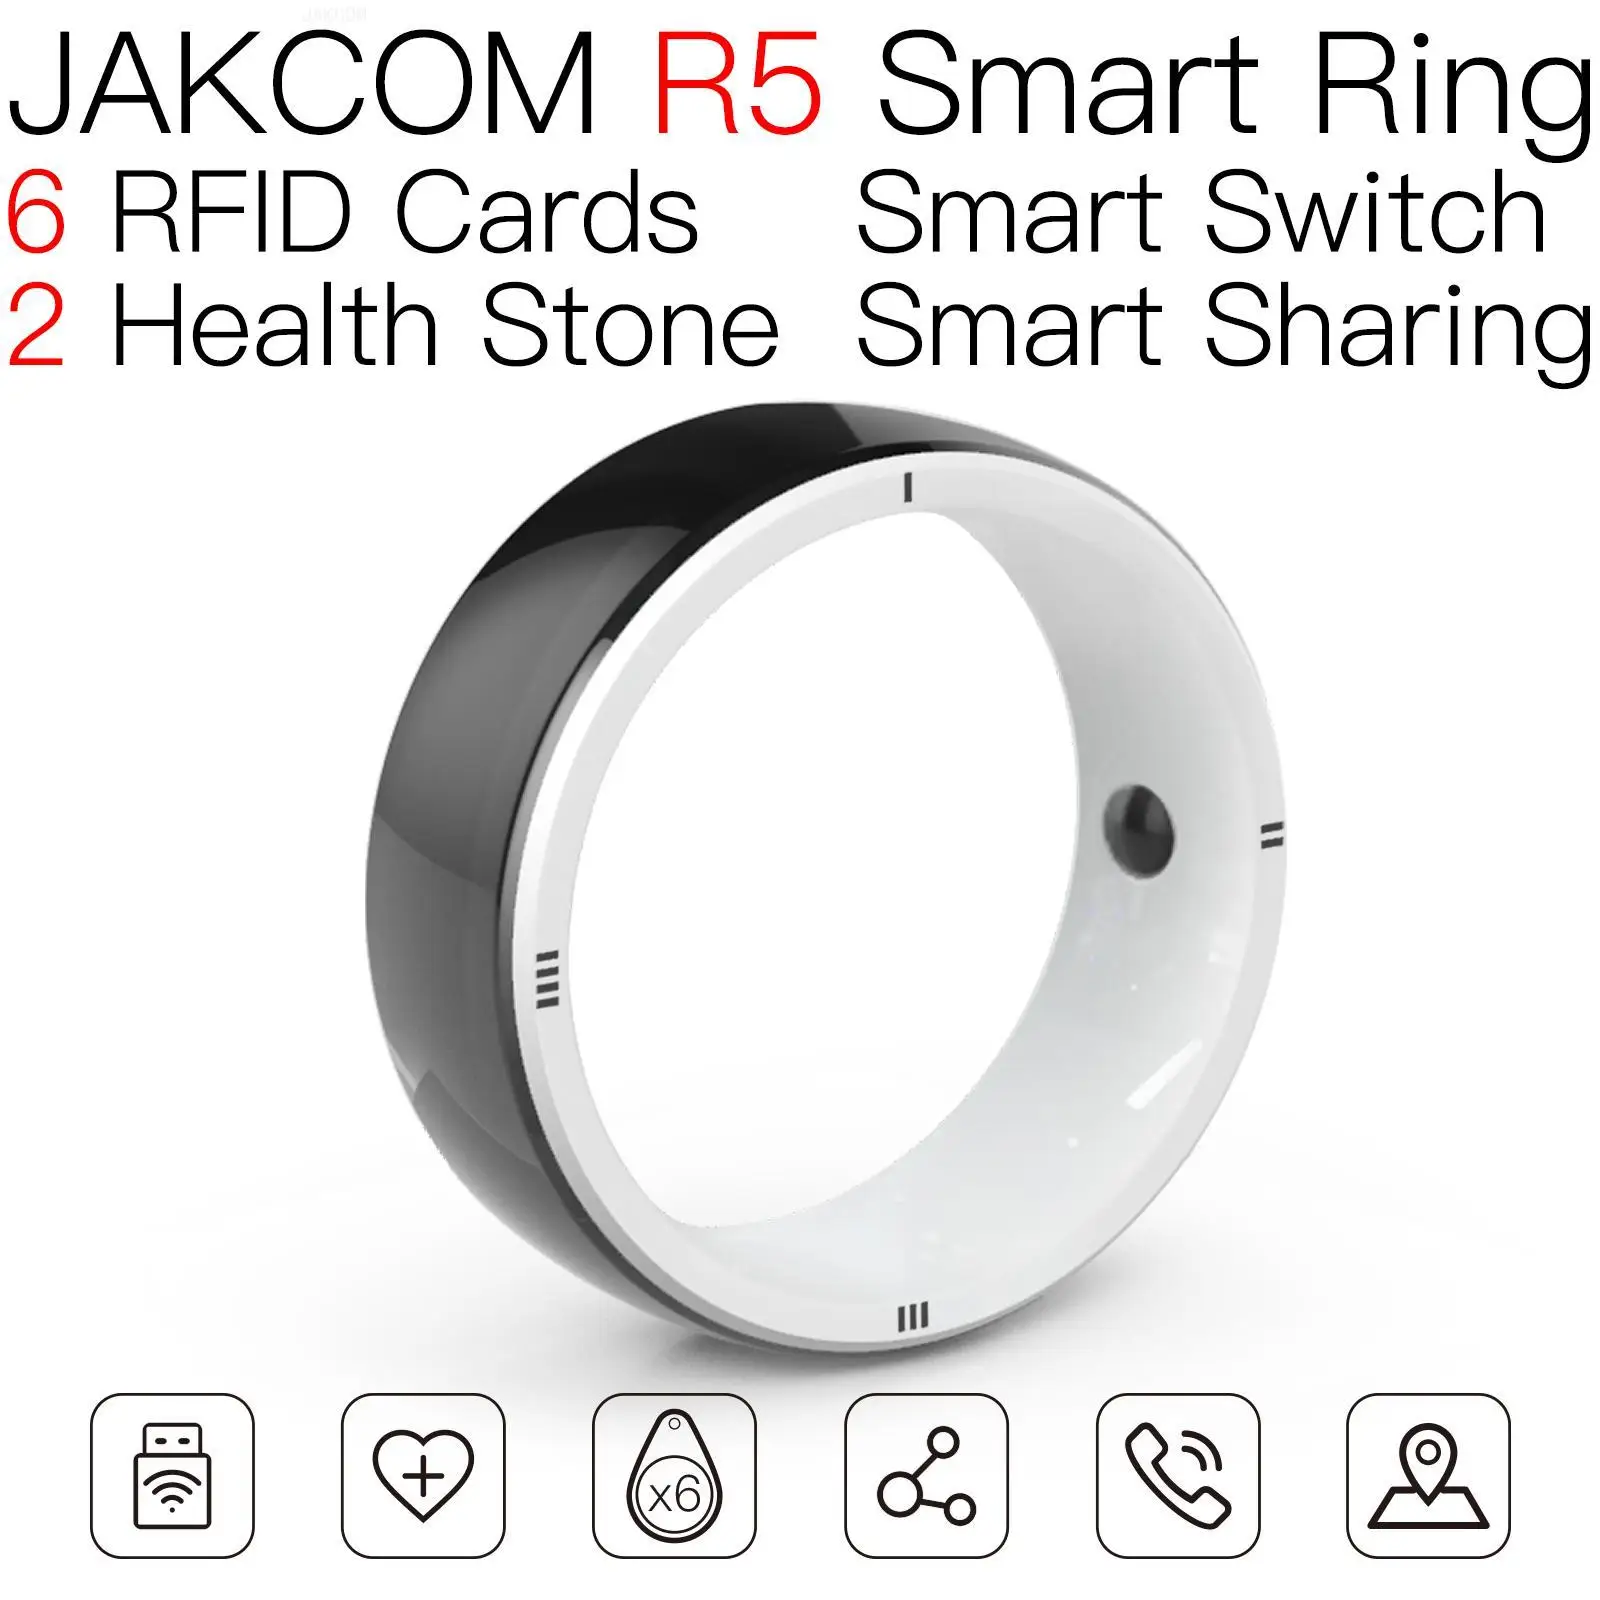 JAKCOM R5 Smart Ring соответствует двойному кольцу с rfid-меткой mini sac kelly перезаписываемый videoland premium 1 год 100шт карт для бизнеса